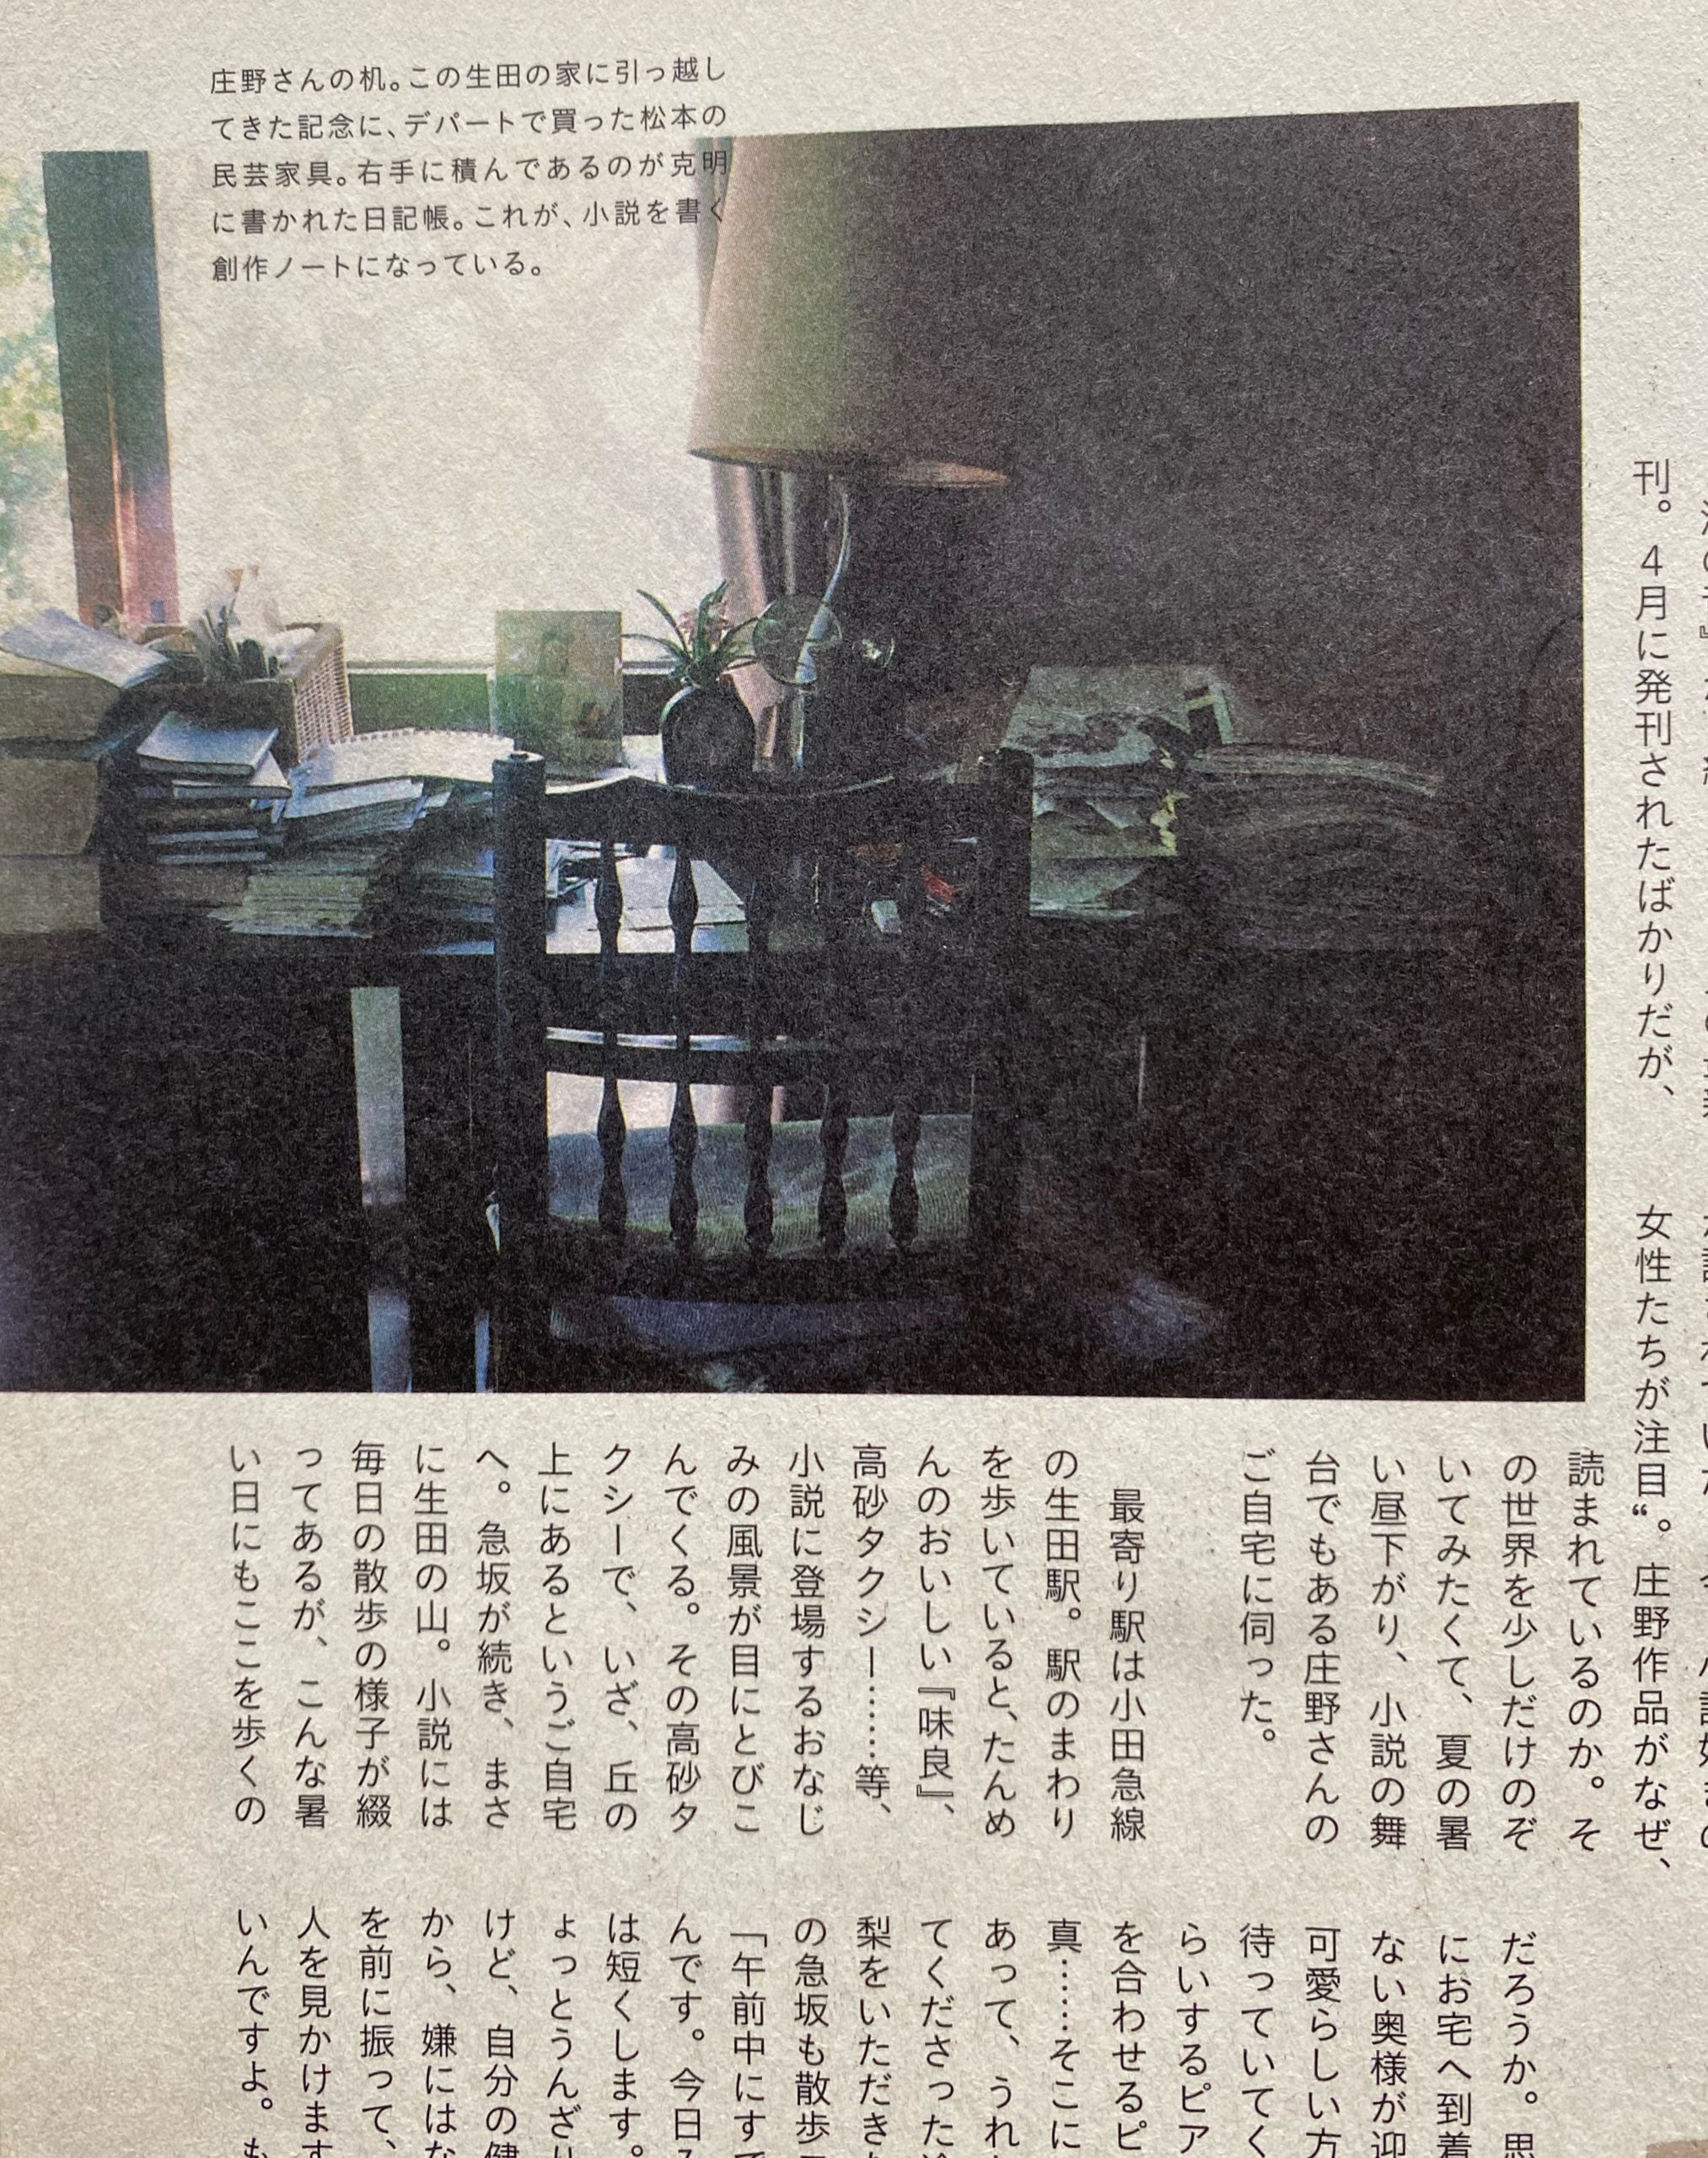 庄野さんの自宅「丘の上の家」の写真も掲載されている